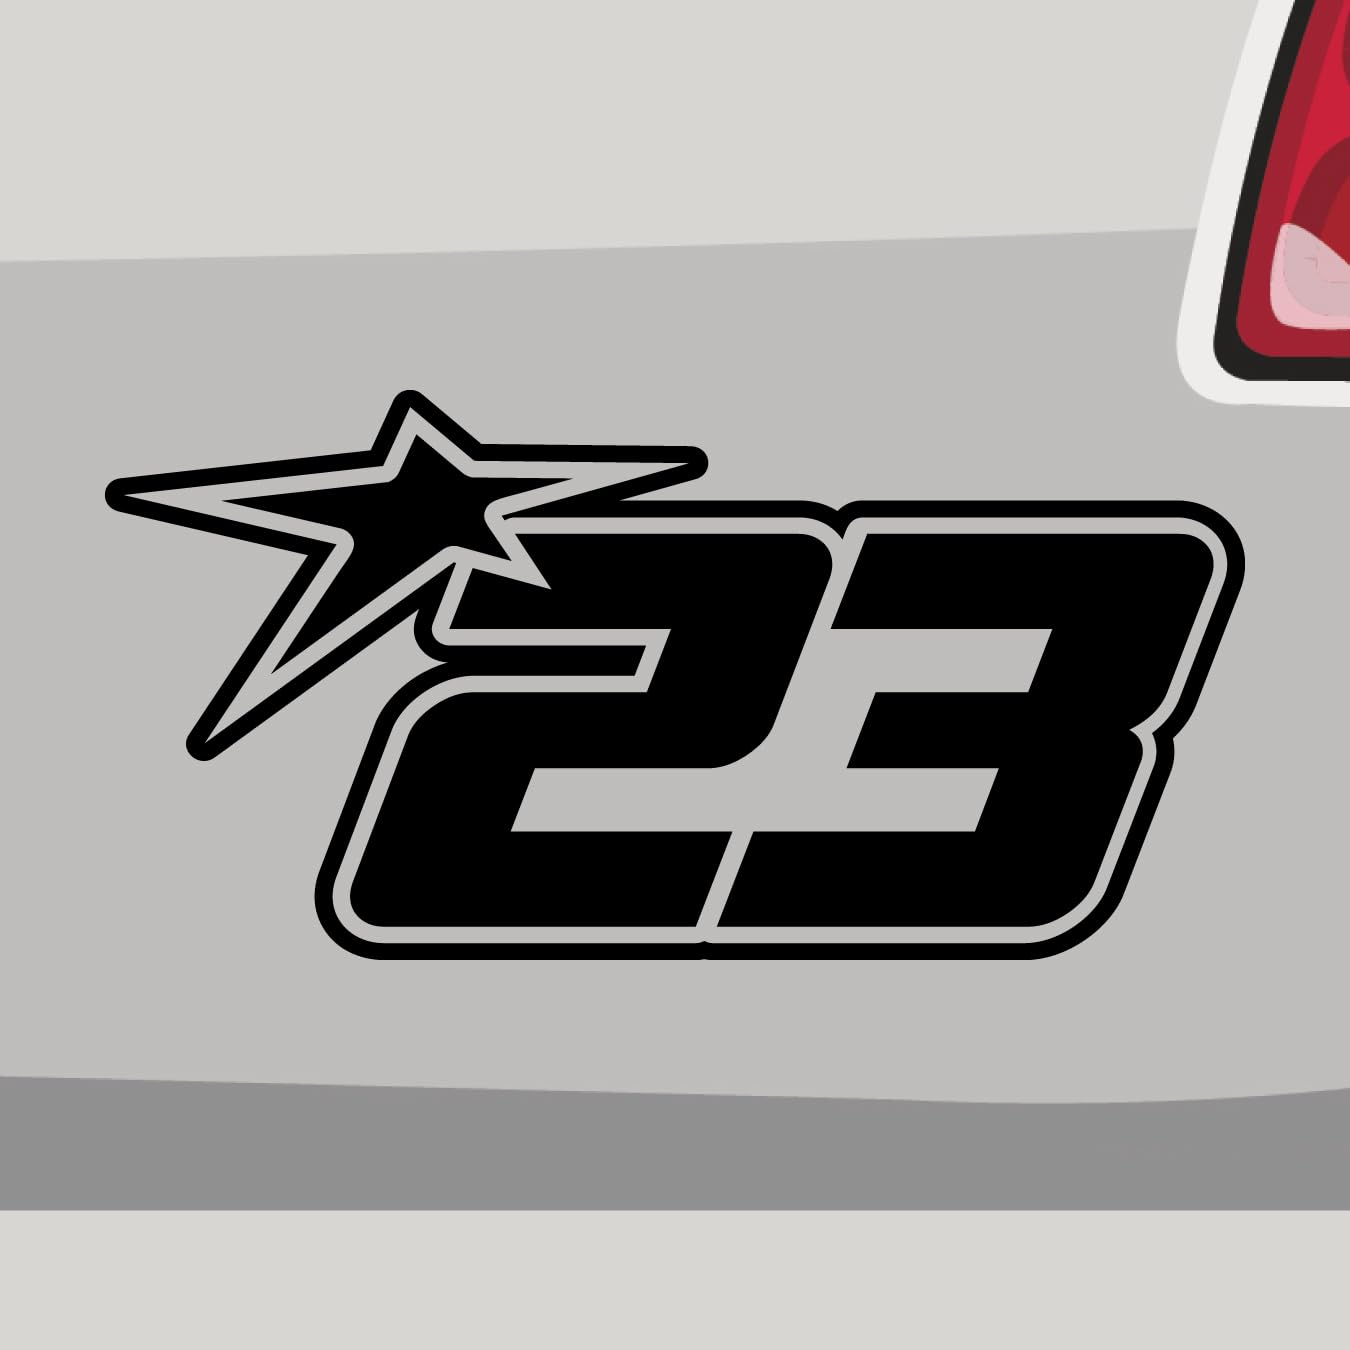 Stickerfreaks Startnummer 23 Aufkleber Race Track Sticker Star Stern Auto Bike Decal Vinyl JDM Aufkleber Größe: 10x5cm (S) | Farbe: 34-orange | Racenumber Sticker Kleber Deko Tuning Zahl von Stickerfreaks